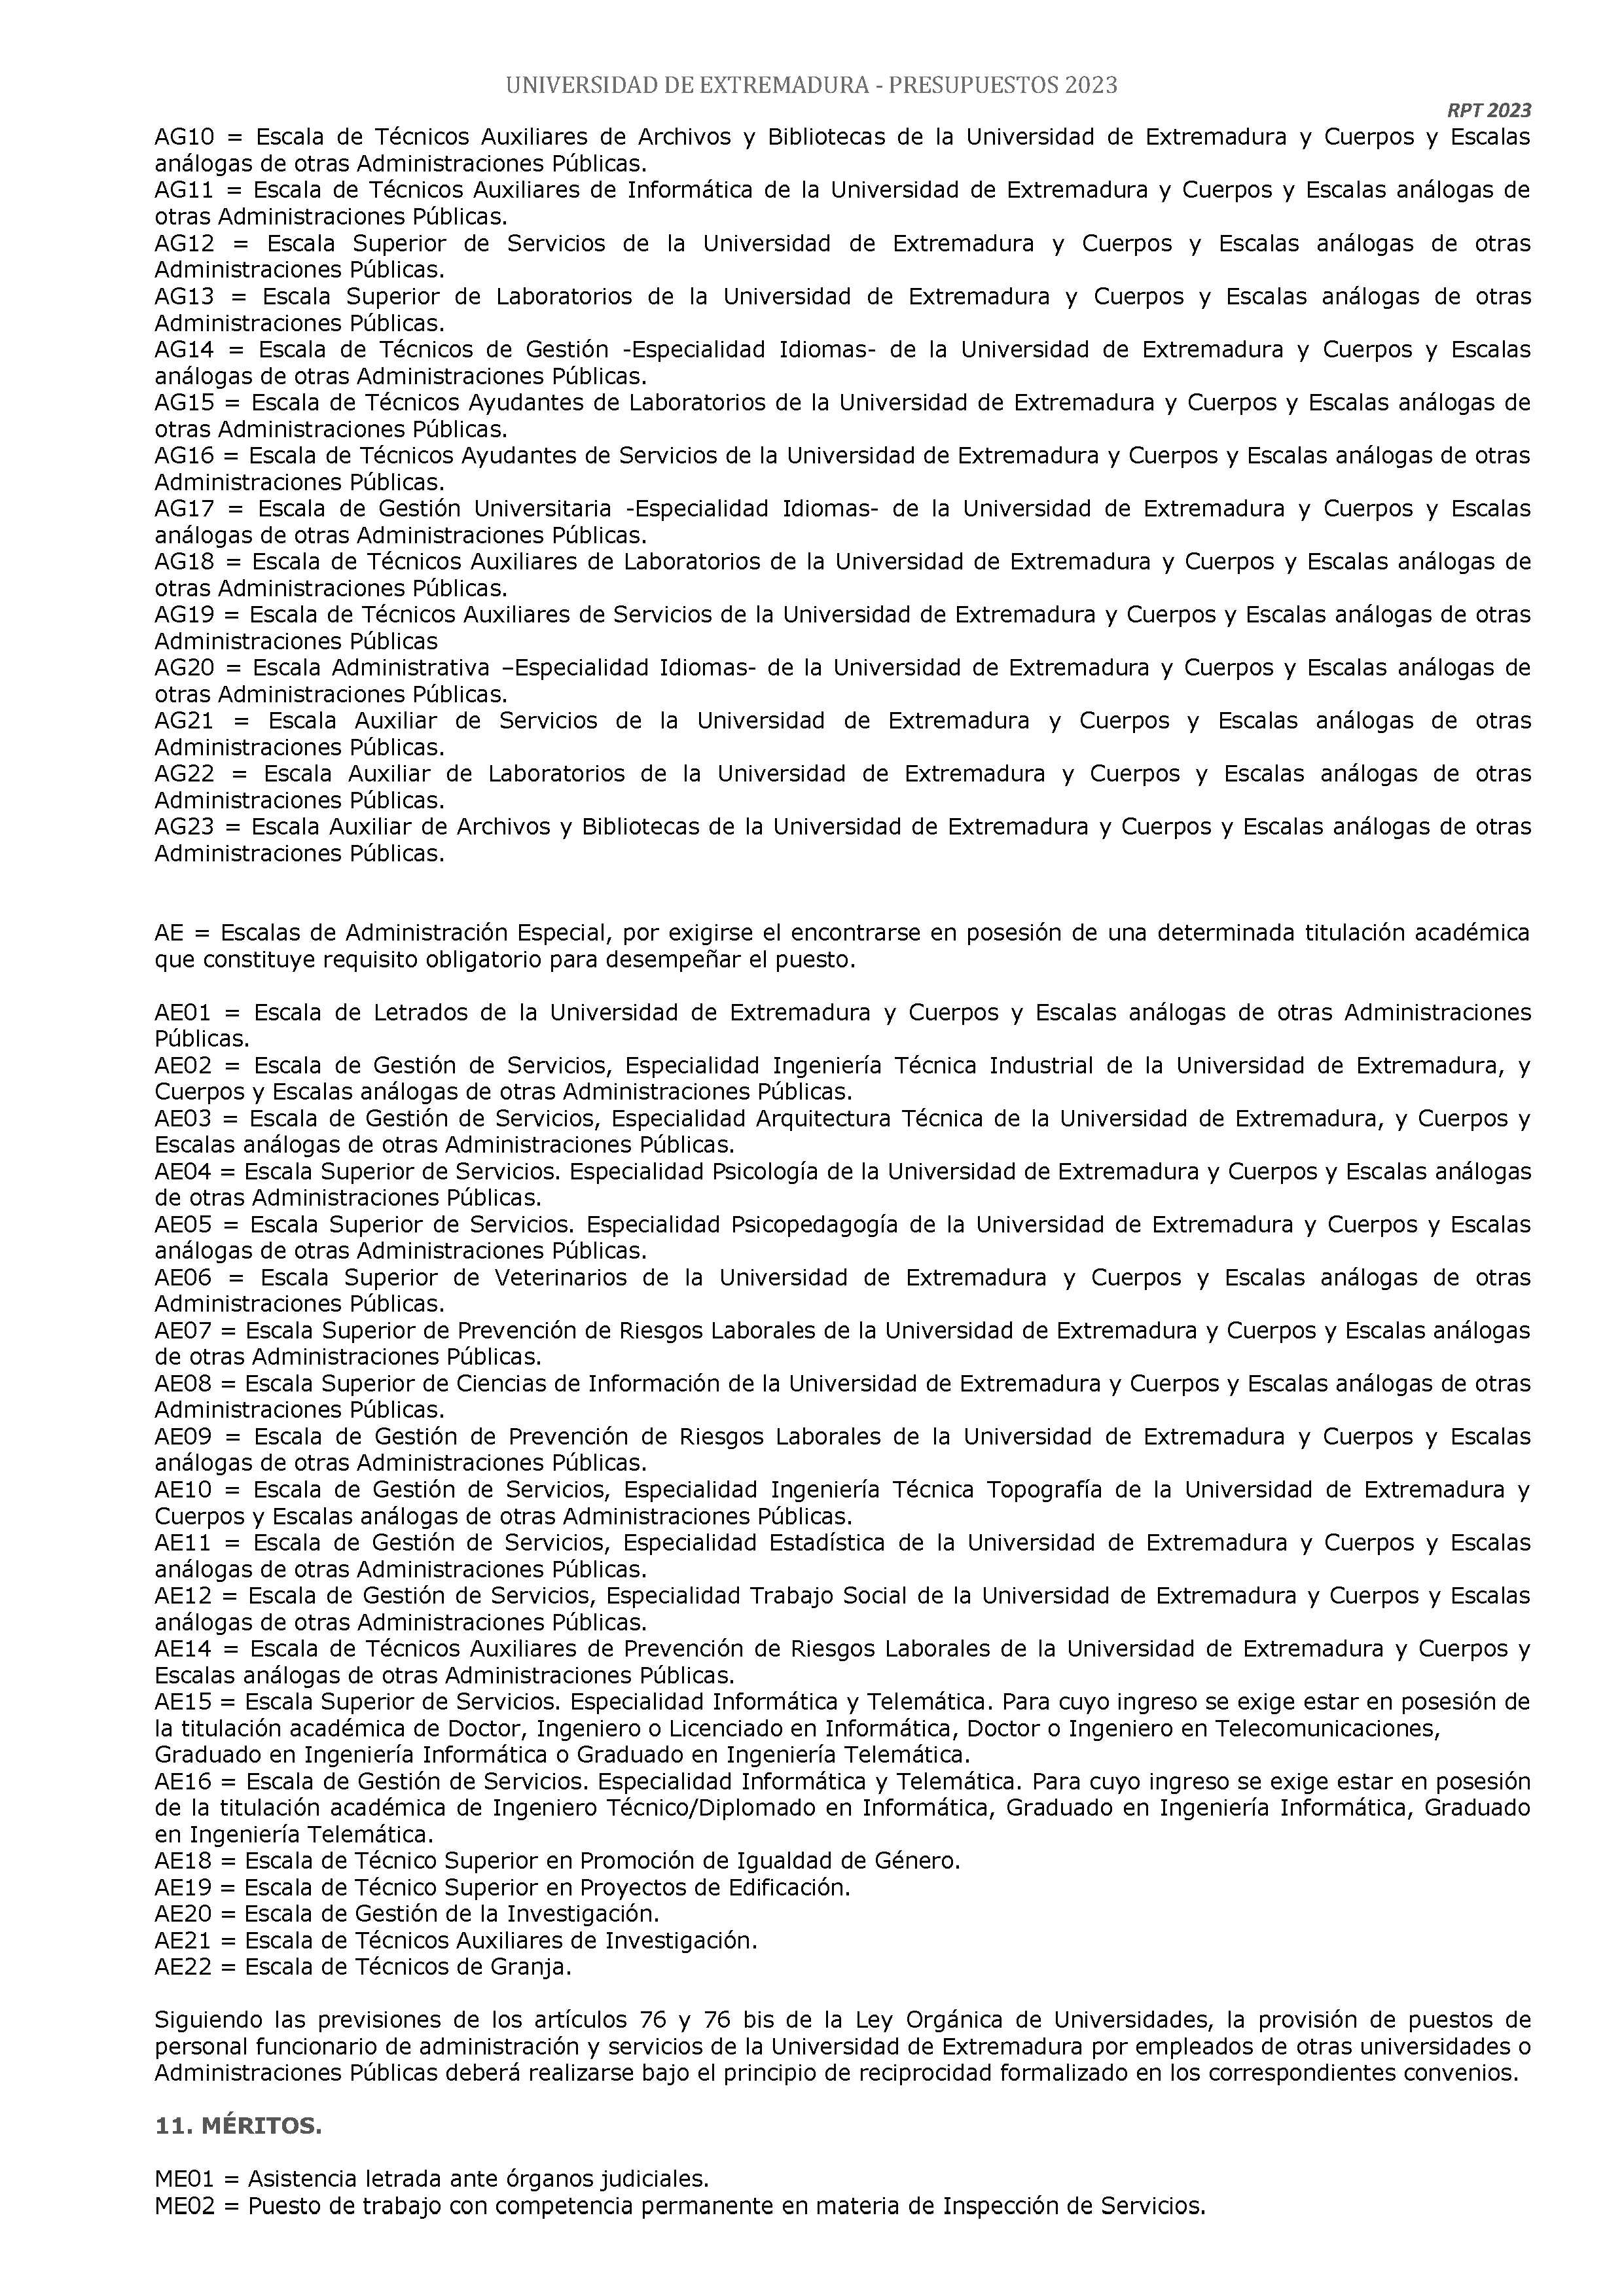 ANEXO - ESTADO NUMERICO DEL PRESUPUESTO Pag 129